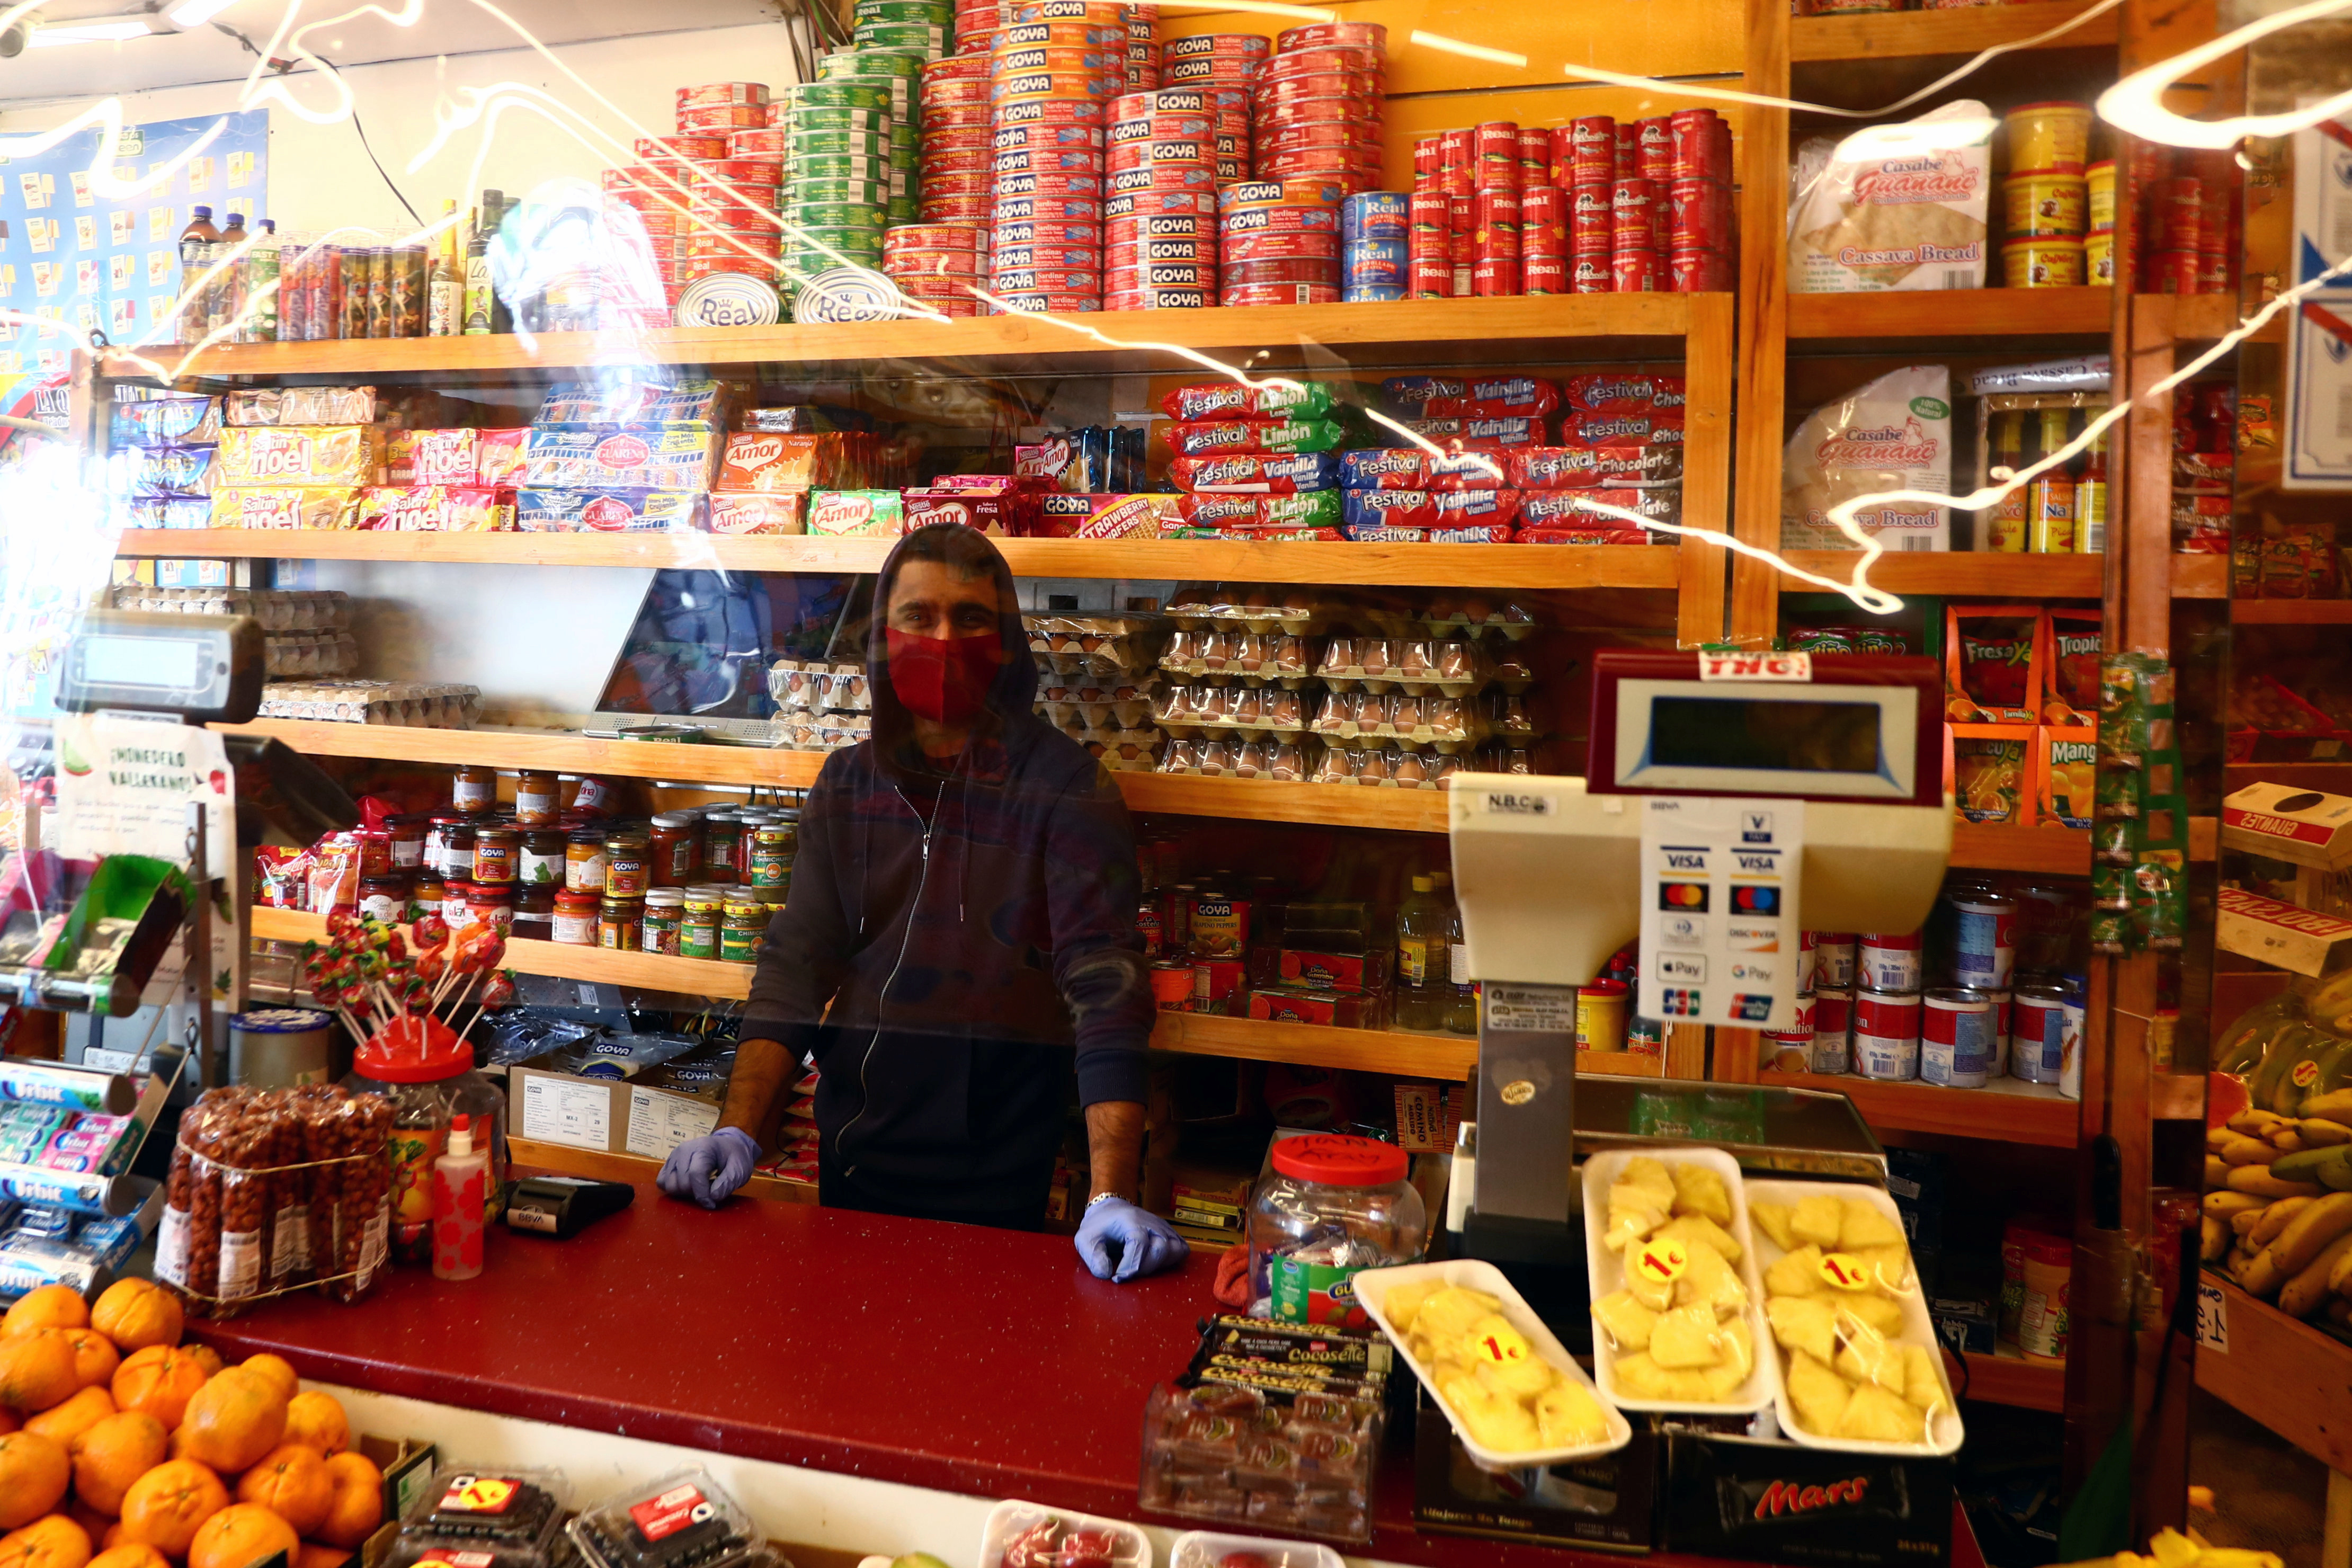 Un empleado con una máscara facial espera a los clientes detrás de una cortina de plástico en una tienda de alimentos en Madrid (REUTERS/Sergio Pérez)